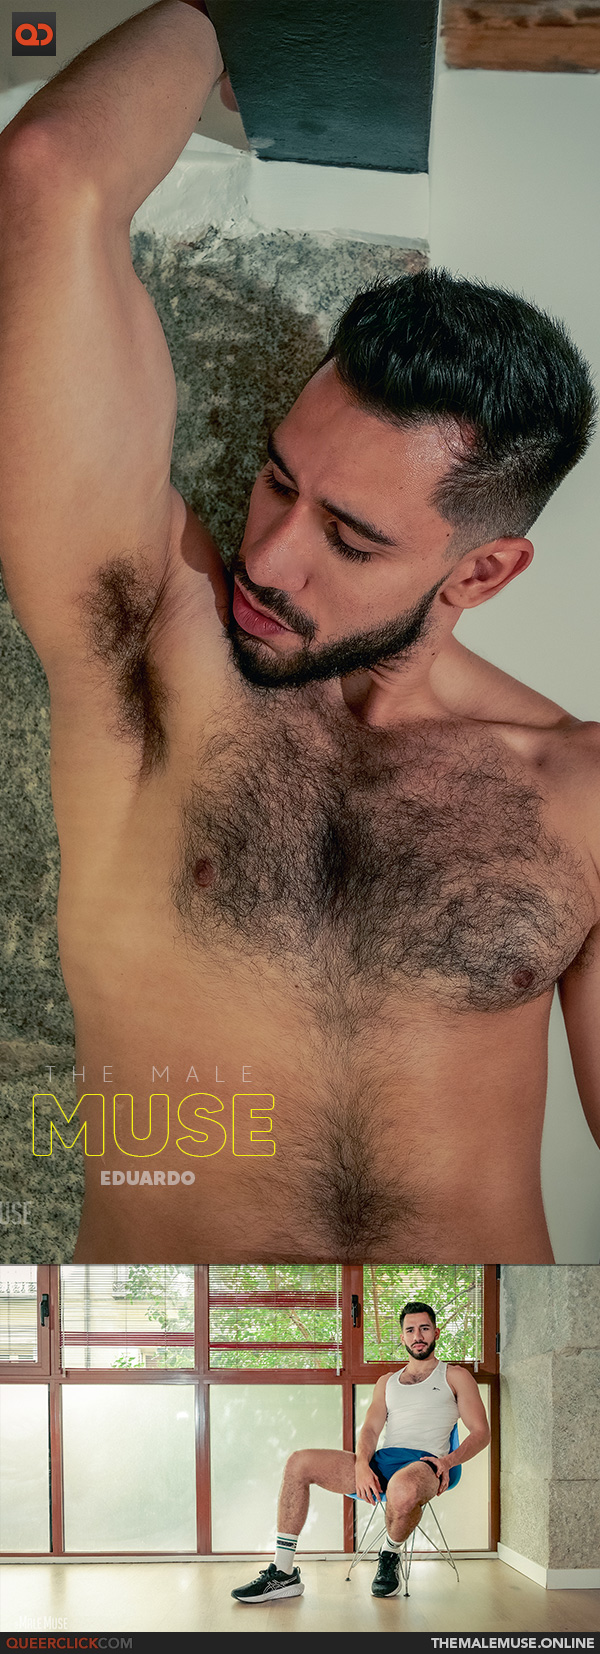 The Male Muse: Eduardo